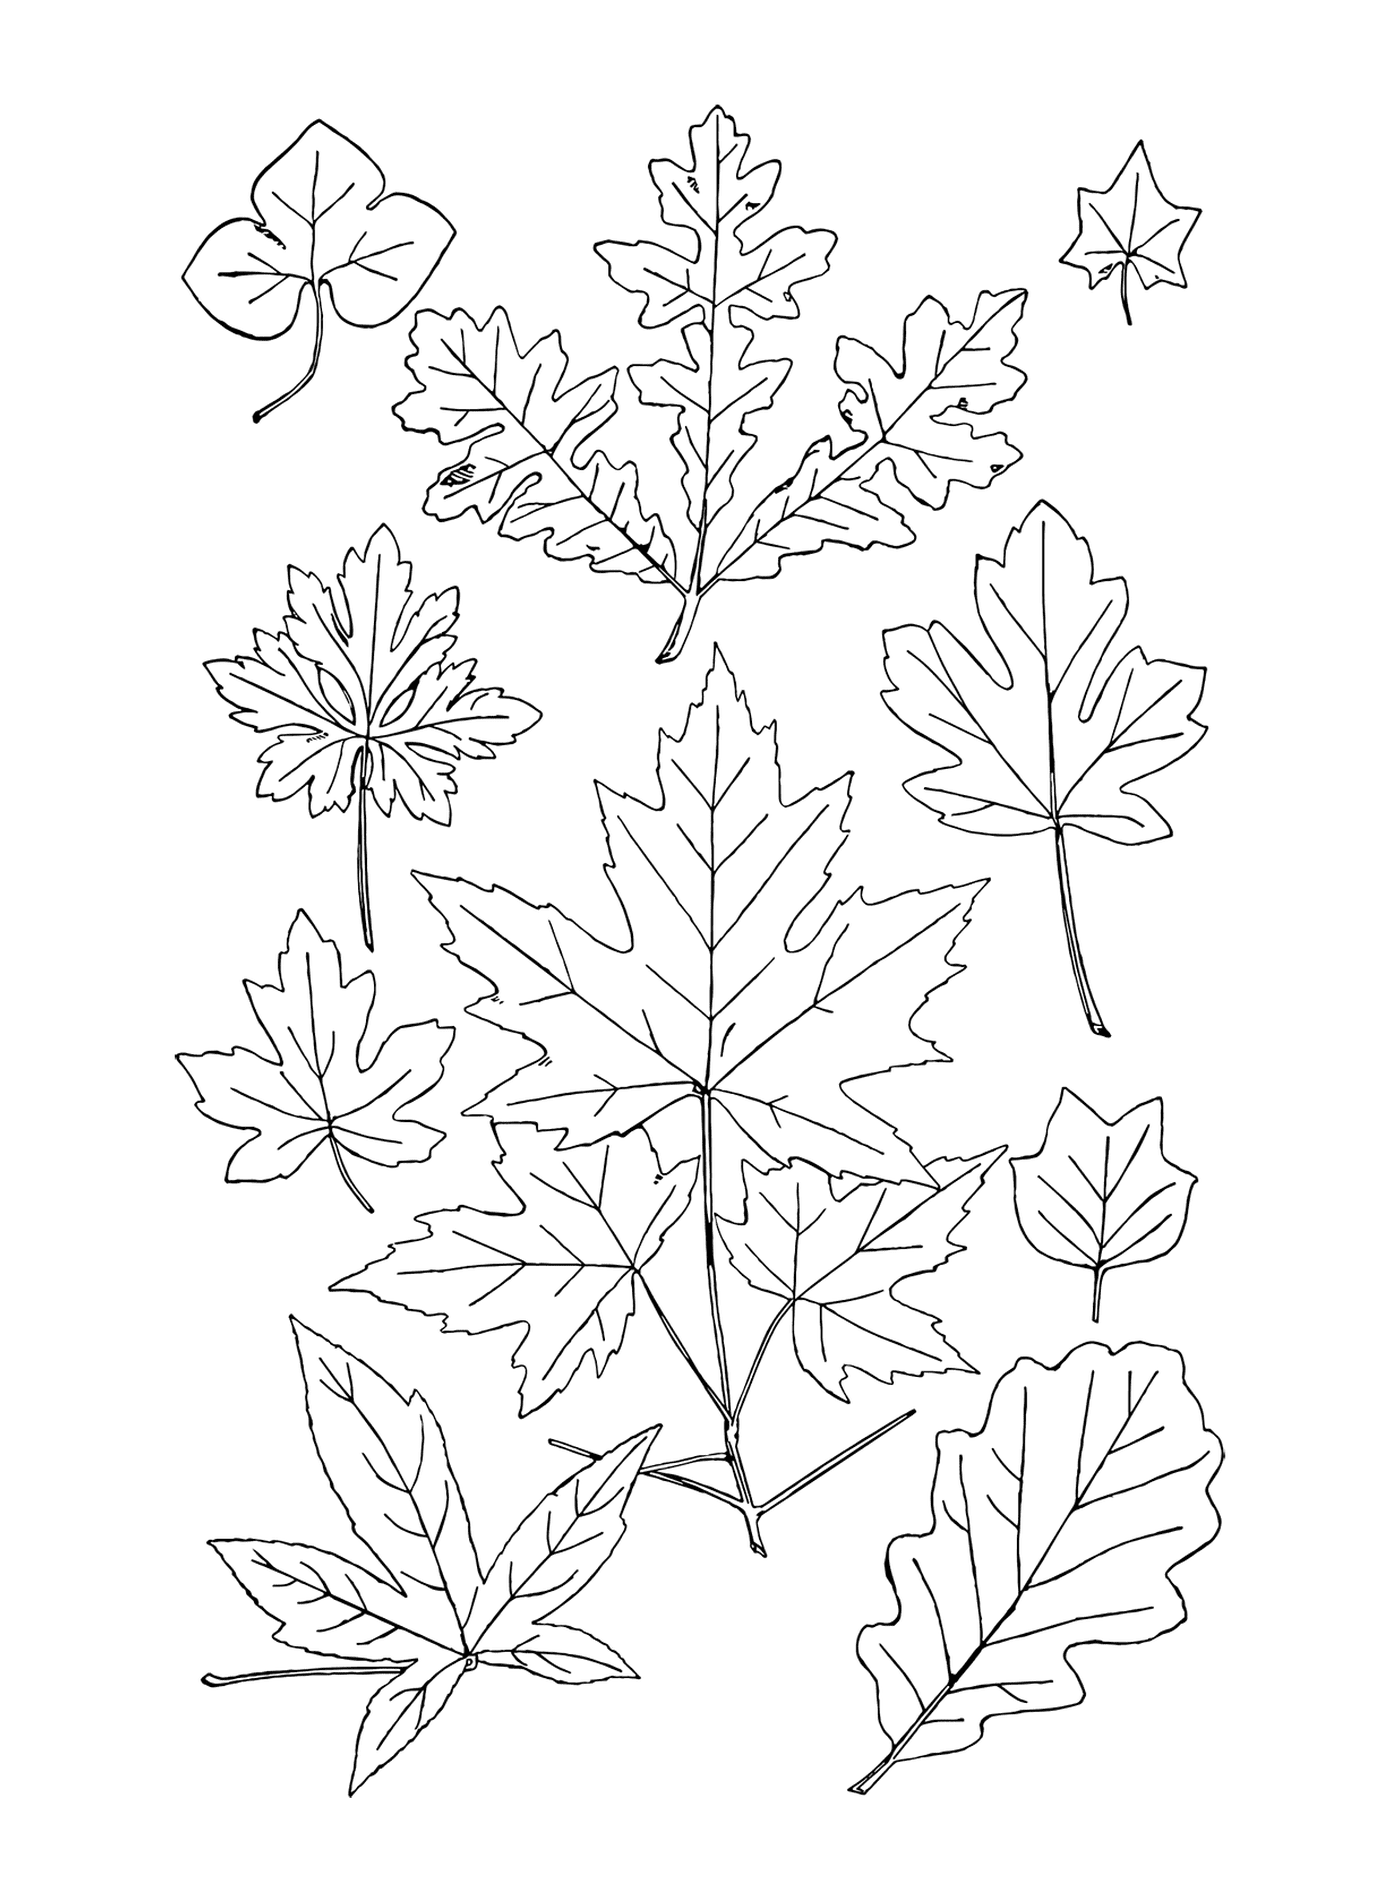  Линия листьев 